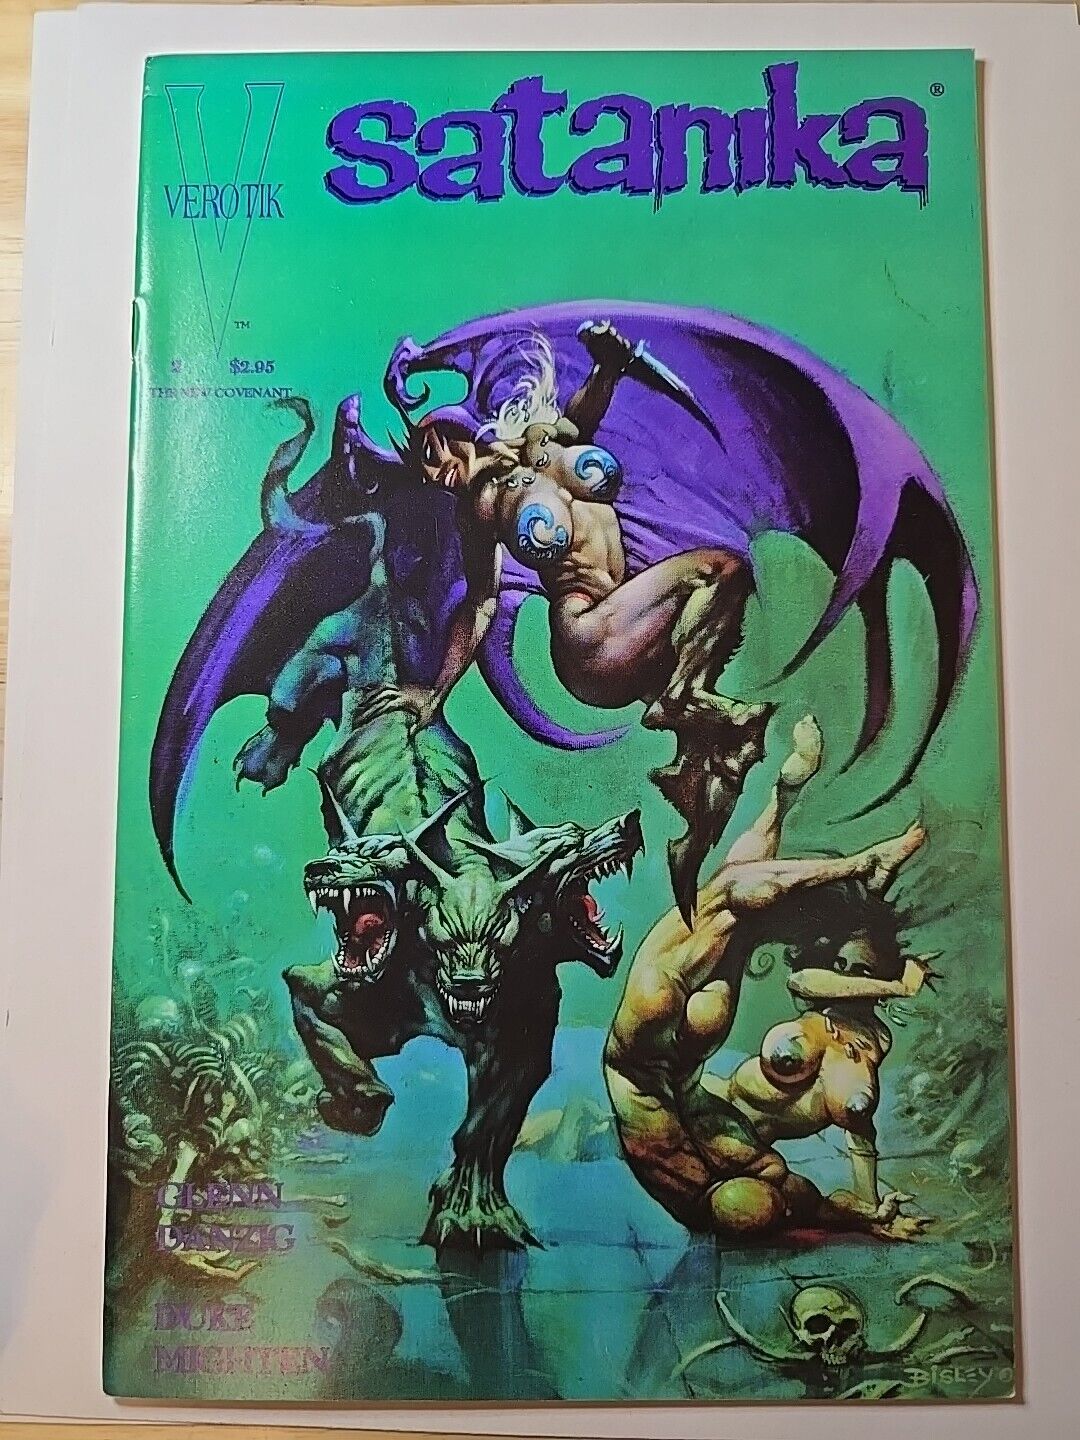 Satanika #2 1st Print, Simon Bisley cover, Verotik Comics, Danzig 